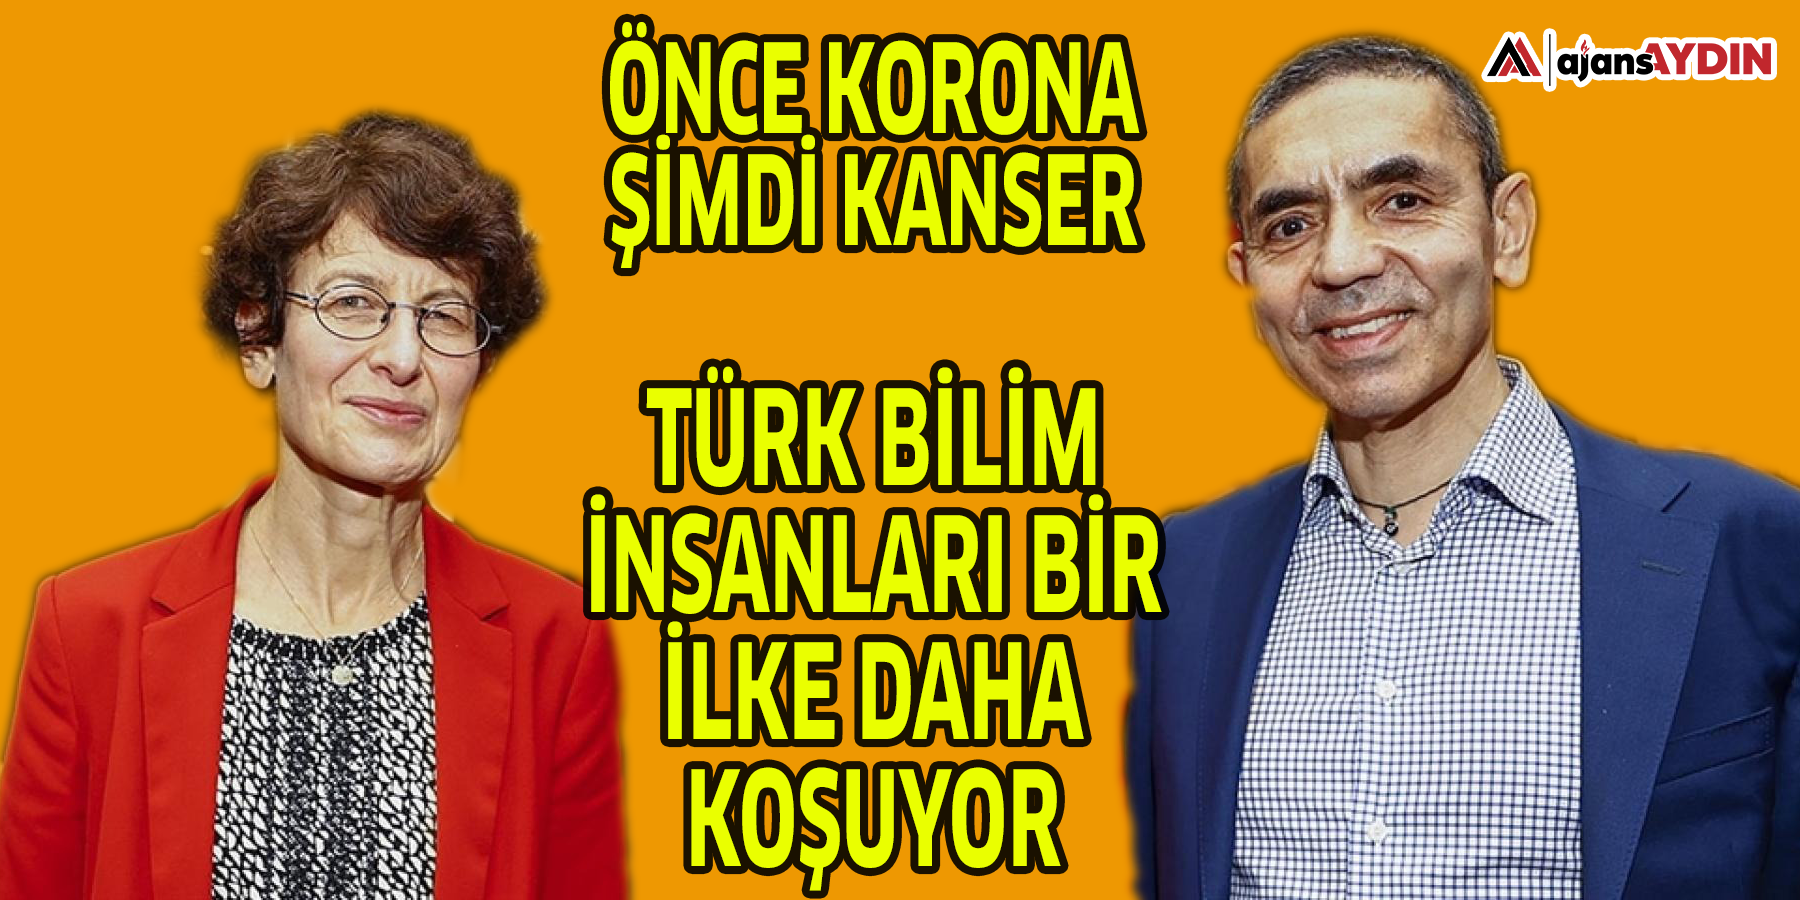 Önce Korona şimdi Kanser; Türk bilim insanları bir ilke daha koşuyor